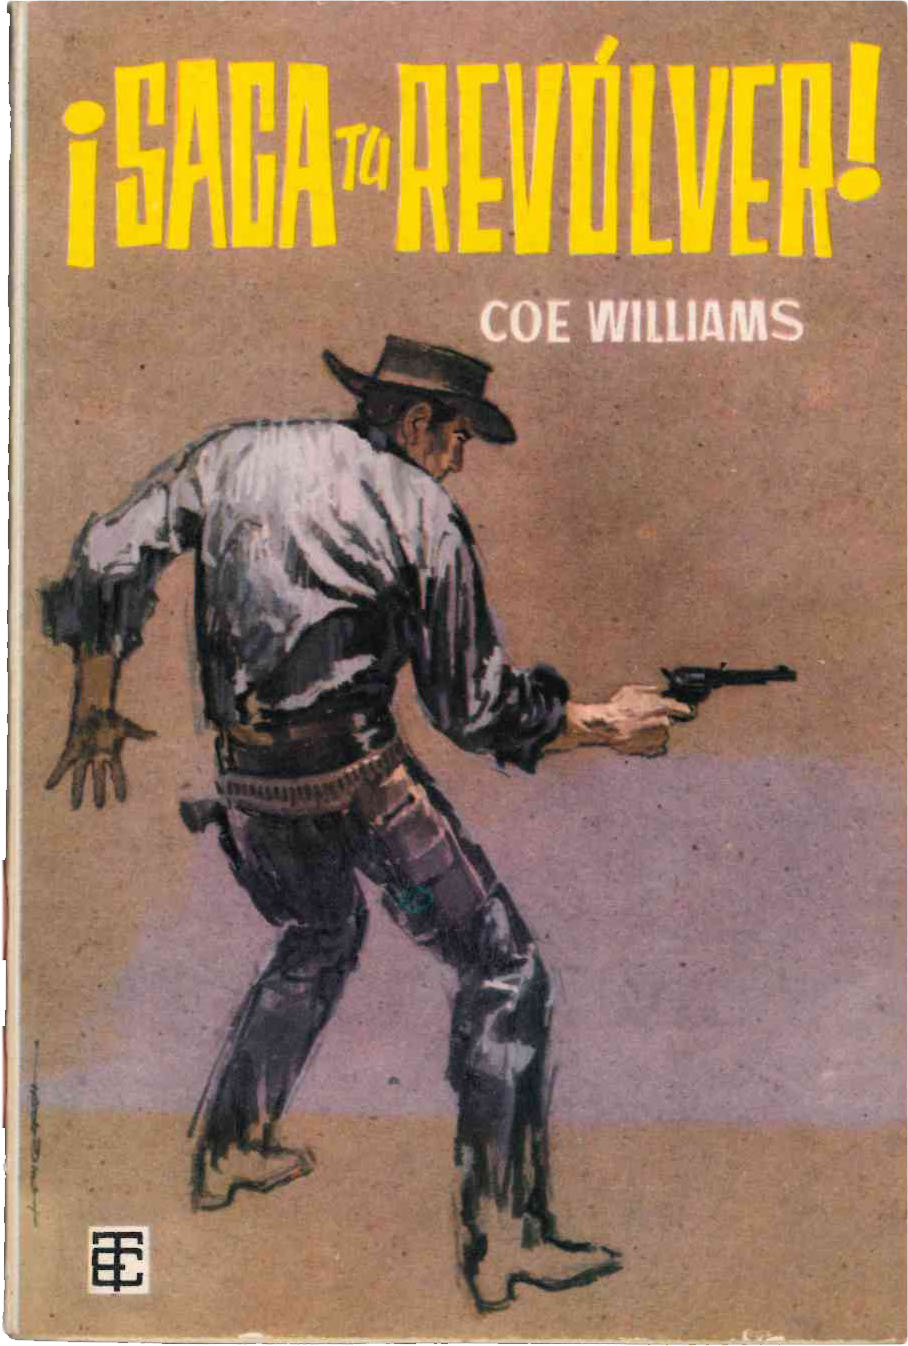 Toray Oeste nº 23. ¡Saca tu revólver! por Coe Williams. Toray 1961